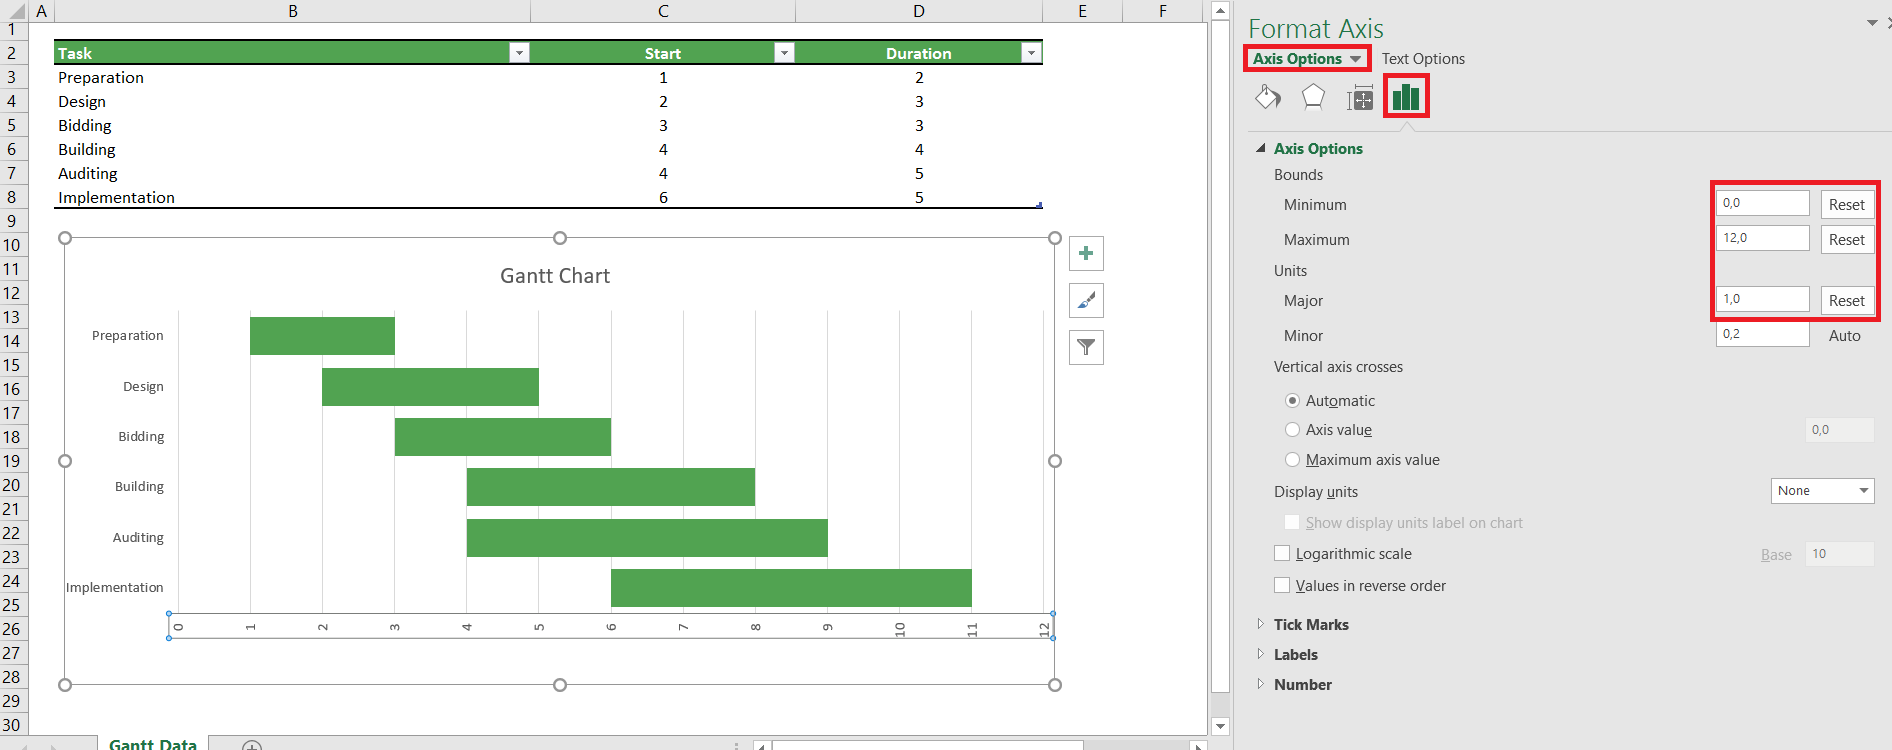 Vaihda taulukon arvot päivämääristä luvuiksi. Klikkaa Gantt-kaaviota hiiren oikealla. Klikkaa Format Plot Area (Muotoile kaavioalue). Valitse sivupaneelista Horizontal Value Axis (Vaakasuuntainen akseli tai jotain sinne päin). Vaihda minimiarvo, maksimiarvo ja arvojen väli niin, että projektin alku ja loppu mahtuu Gantt-kaavioon järkevästi.